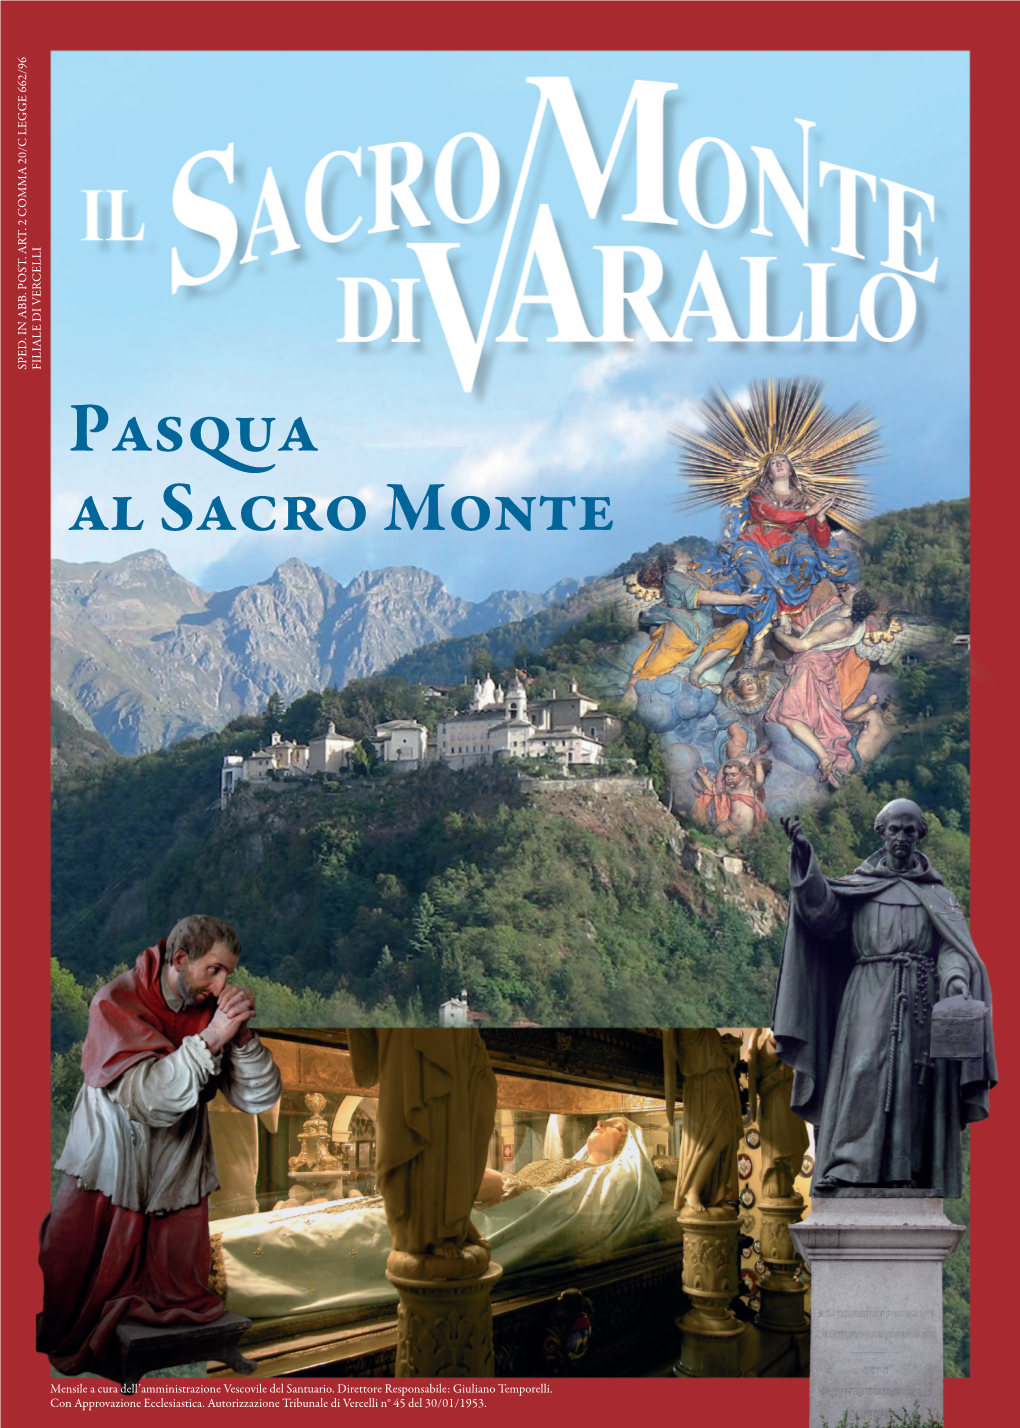 Pasqua Al Sacro Monte